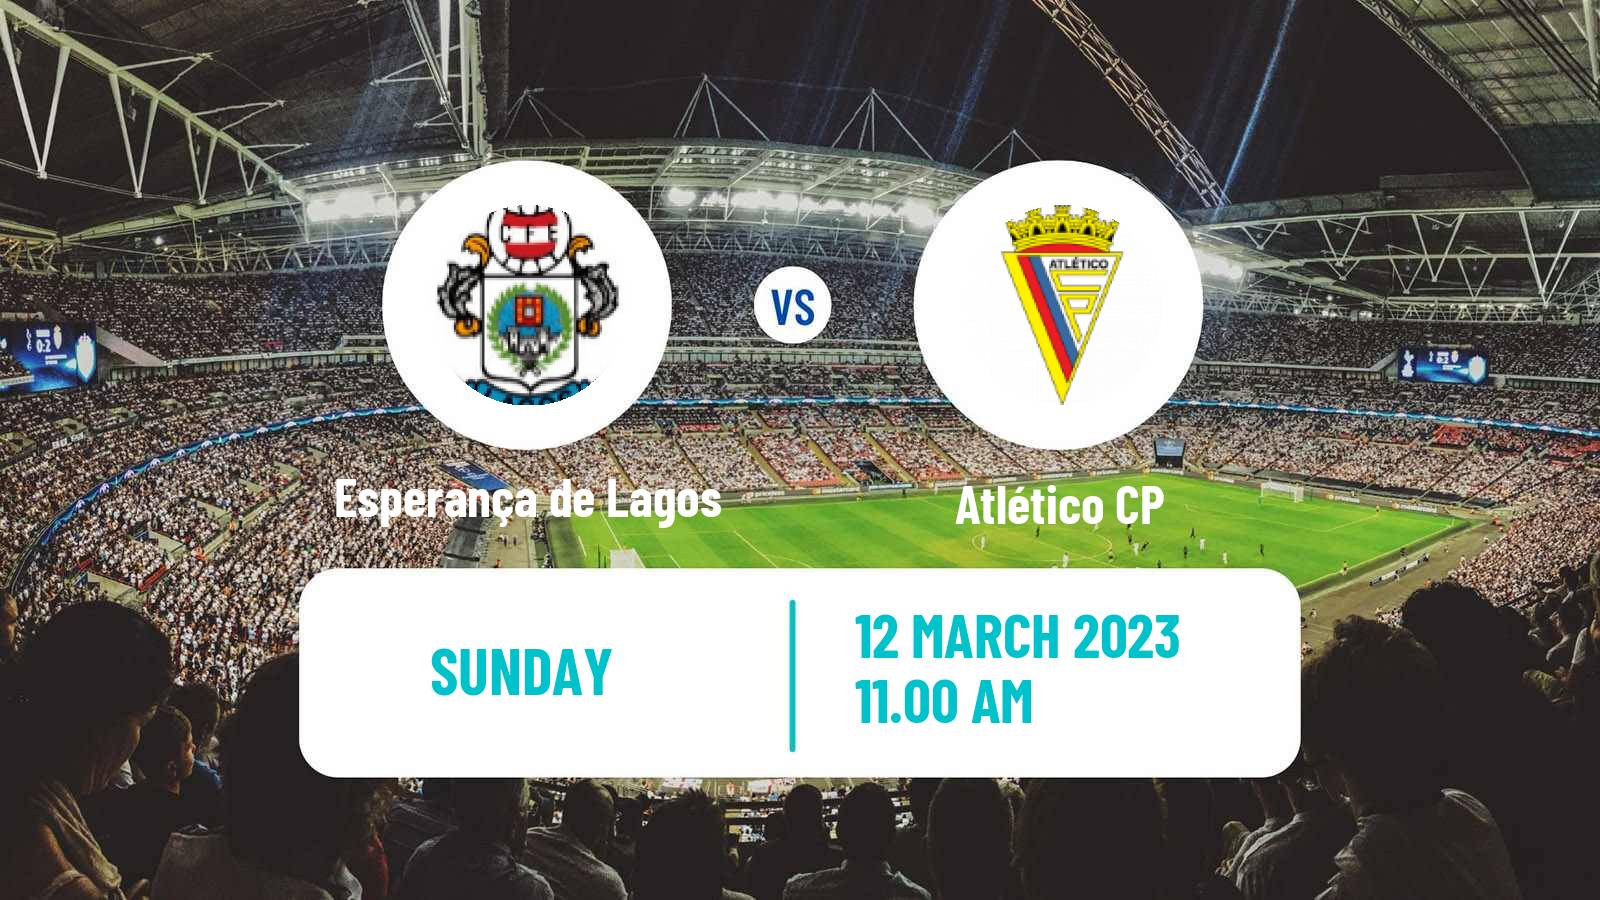 Soccer Campeonato de Portugal Esperança de Lagos - Atlético CP